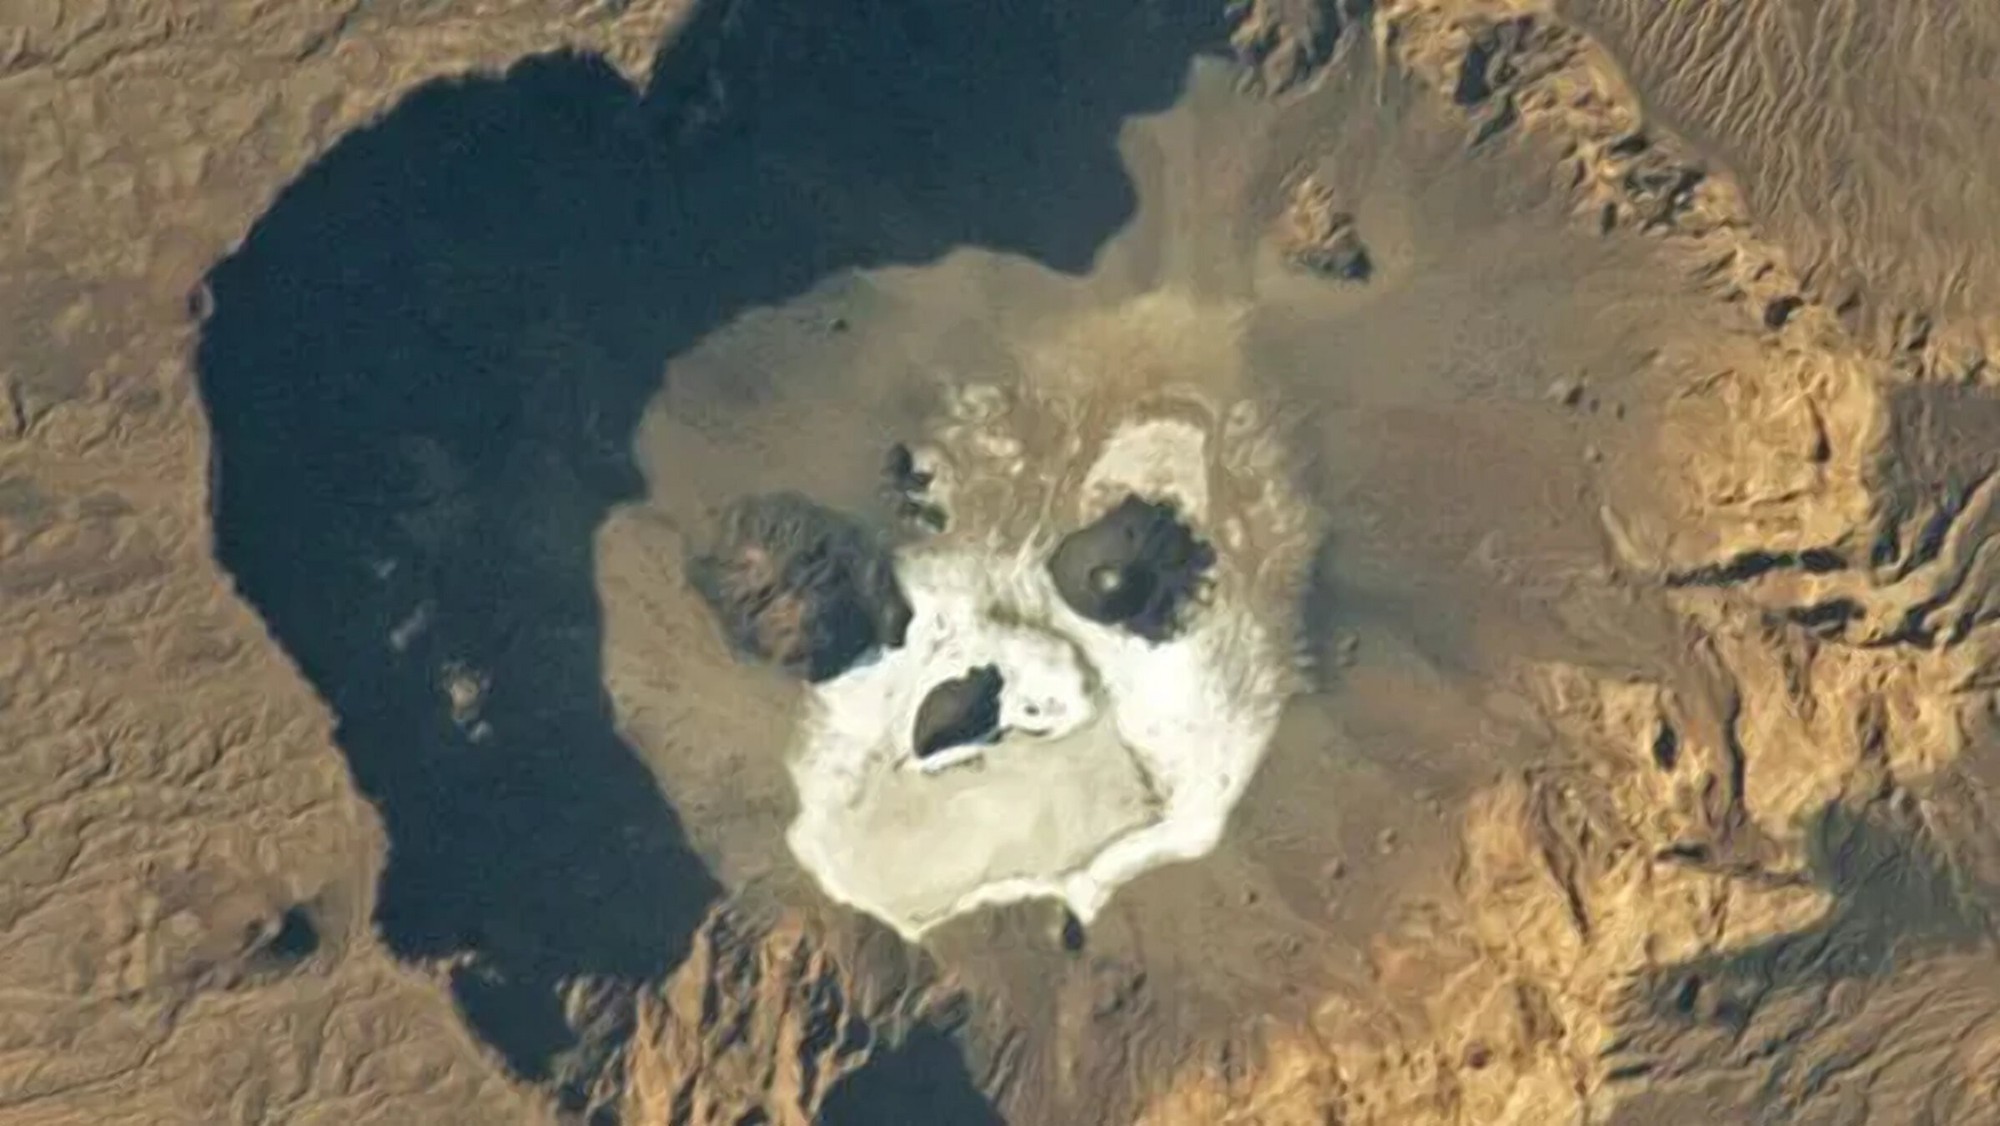 NASA công bố hình ảnh "hộp sọ khổng lồ" phát sáng giữa sa mạc Sahara